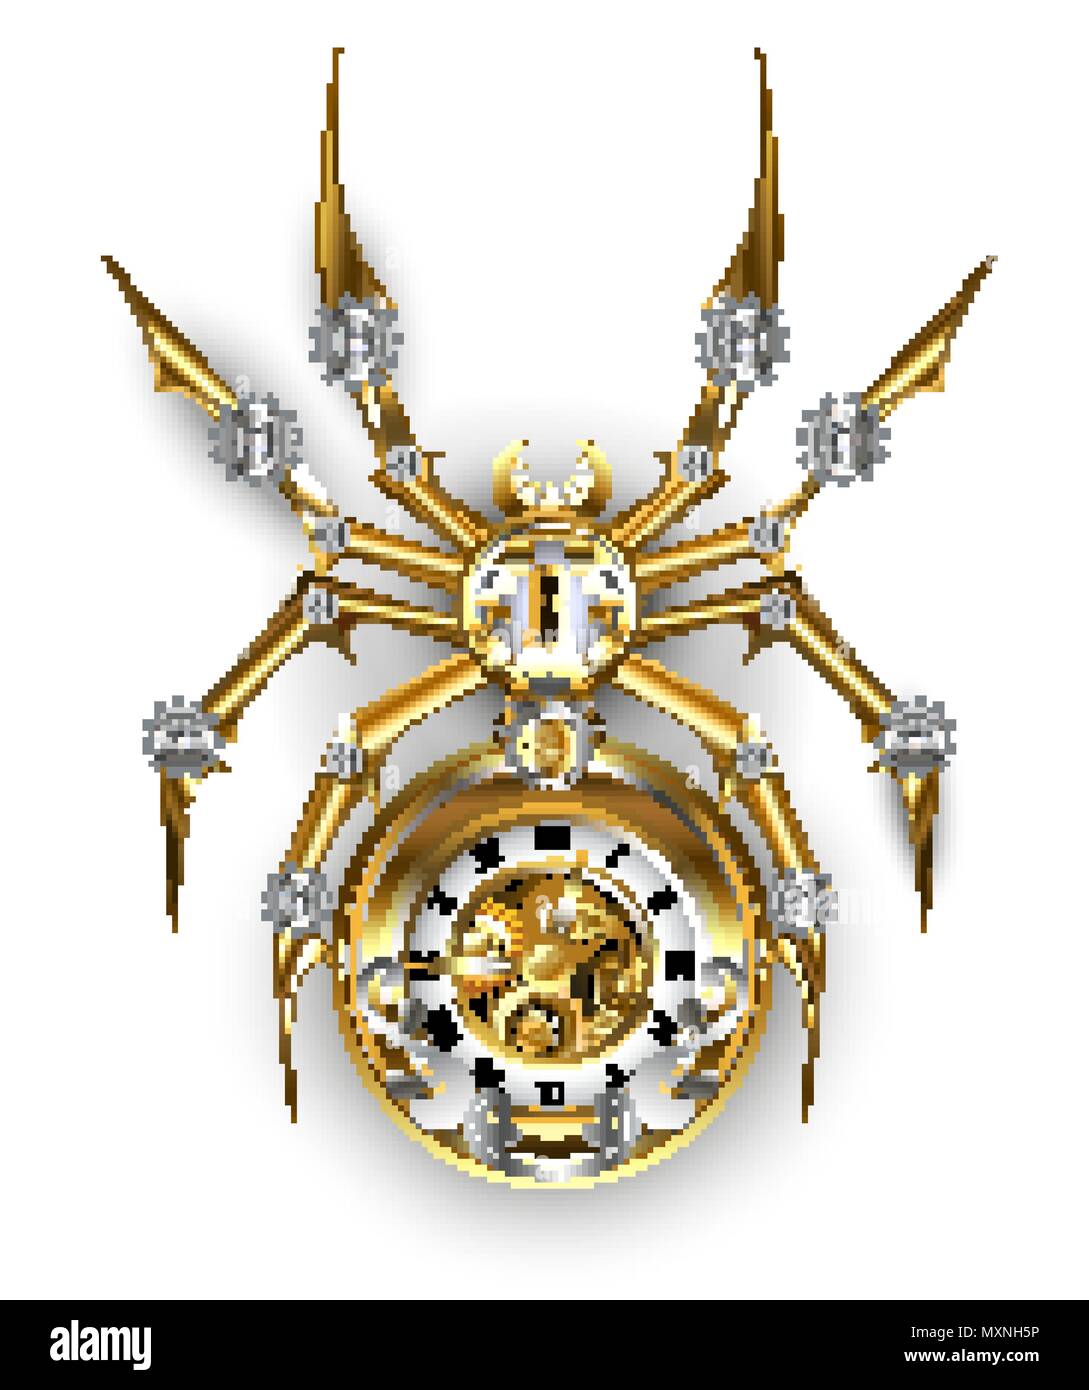 Araignée mécanique en or et acier avec une horloge ancienne ornée avec des engrenages sur fond blanc. Illustration de Vecteur